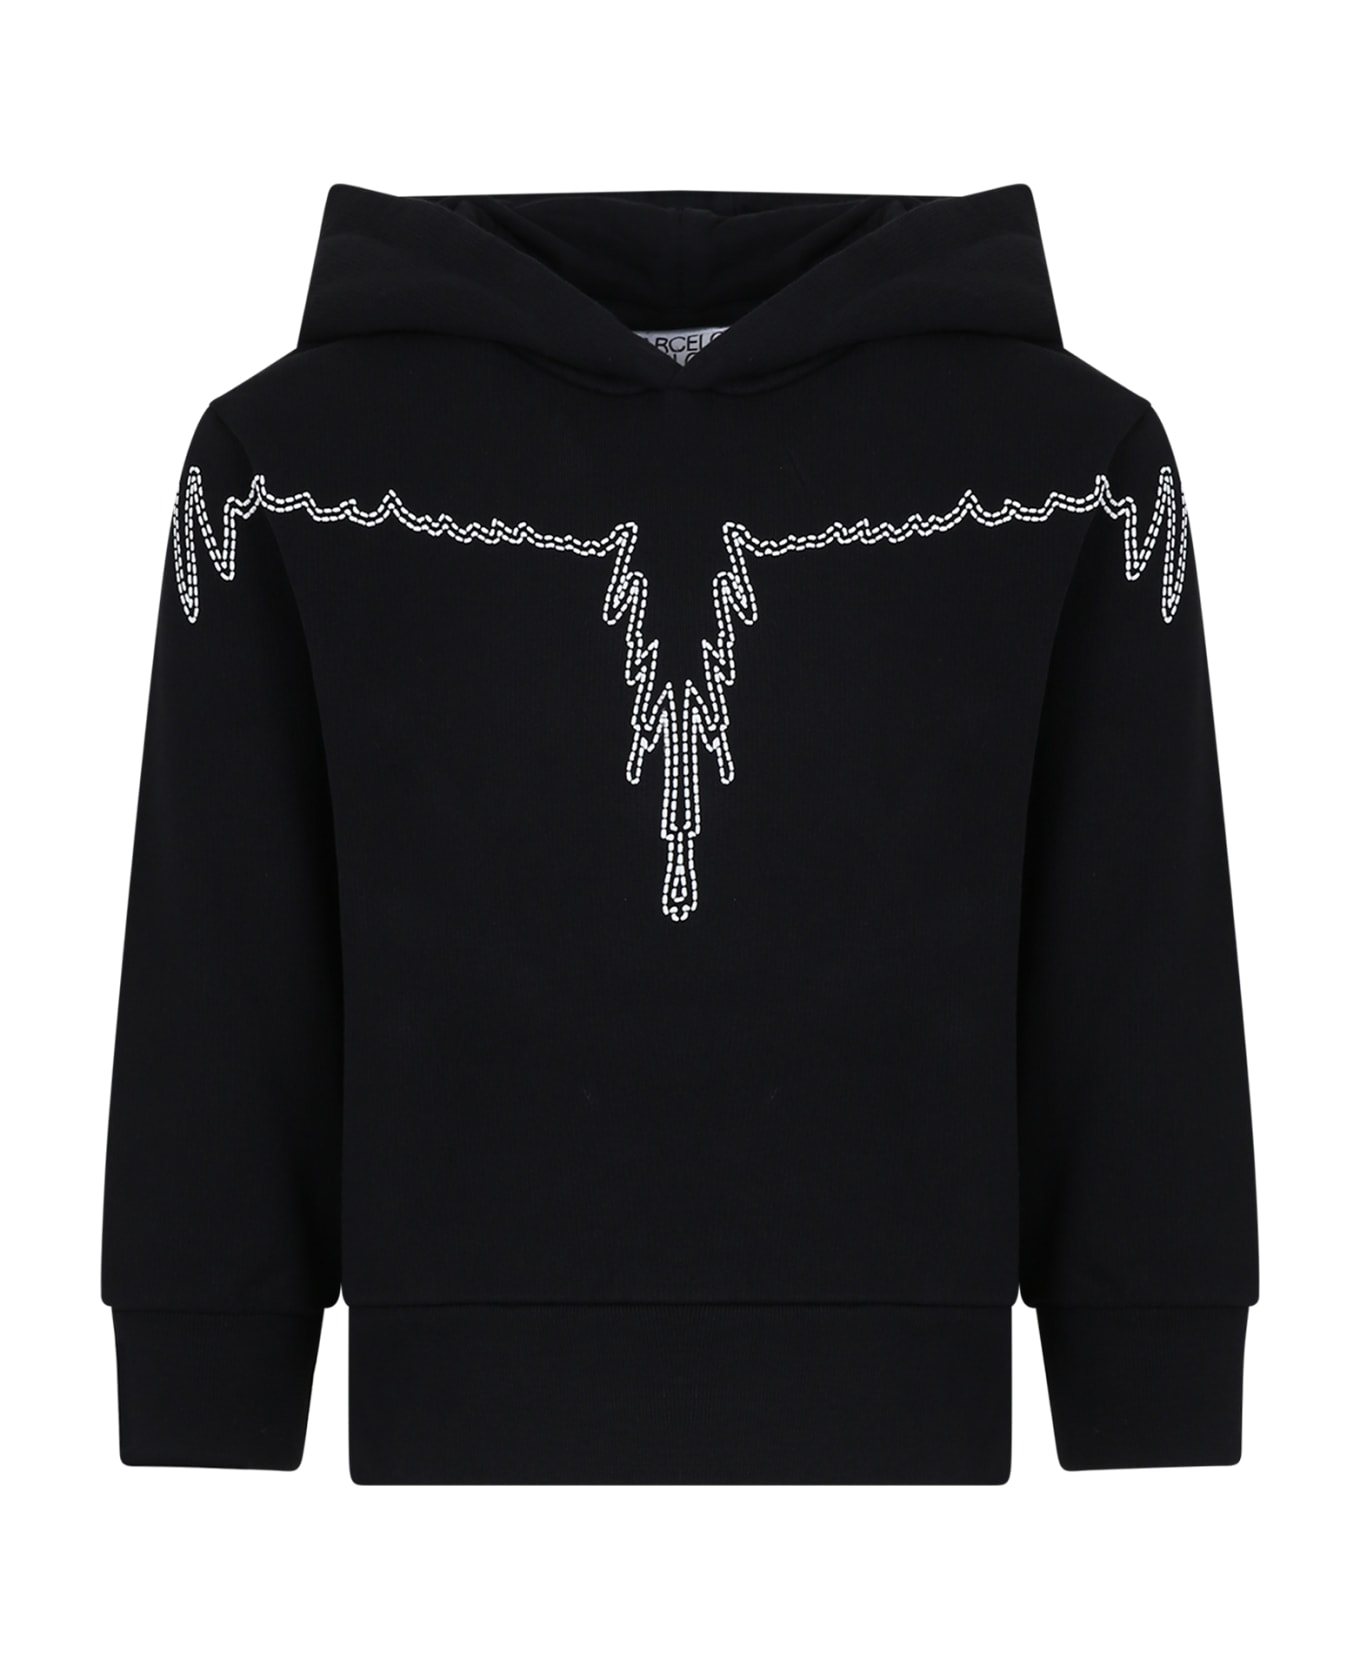 Marcelo Burlon Black Sweatshirt For Boy With Wings - Black ニットウェア＆スウェットシャツ